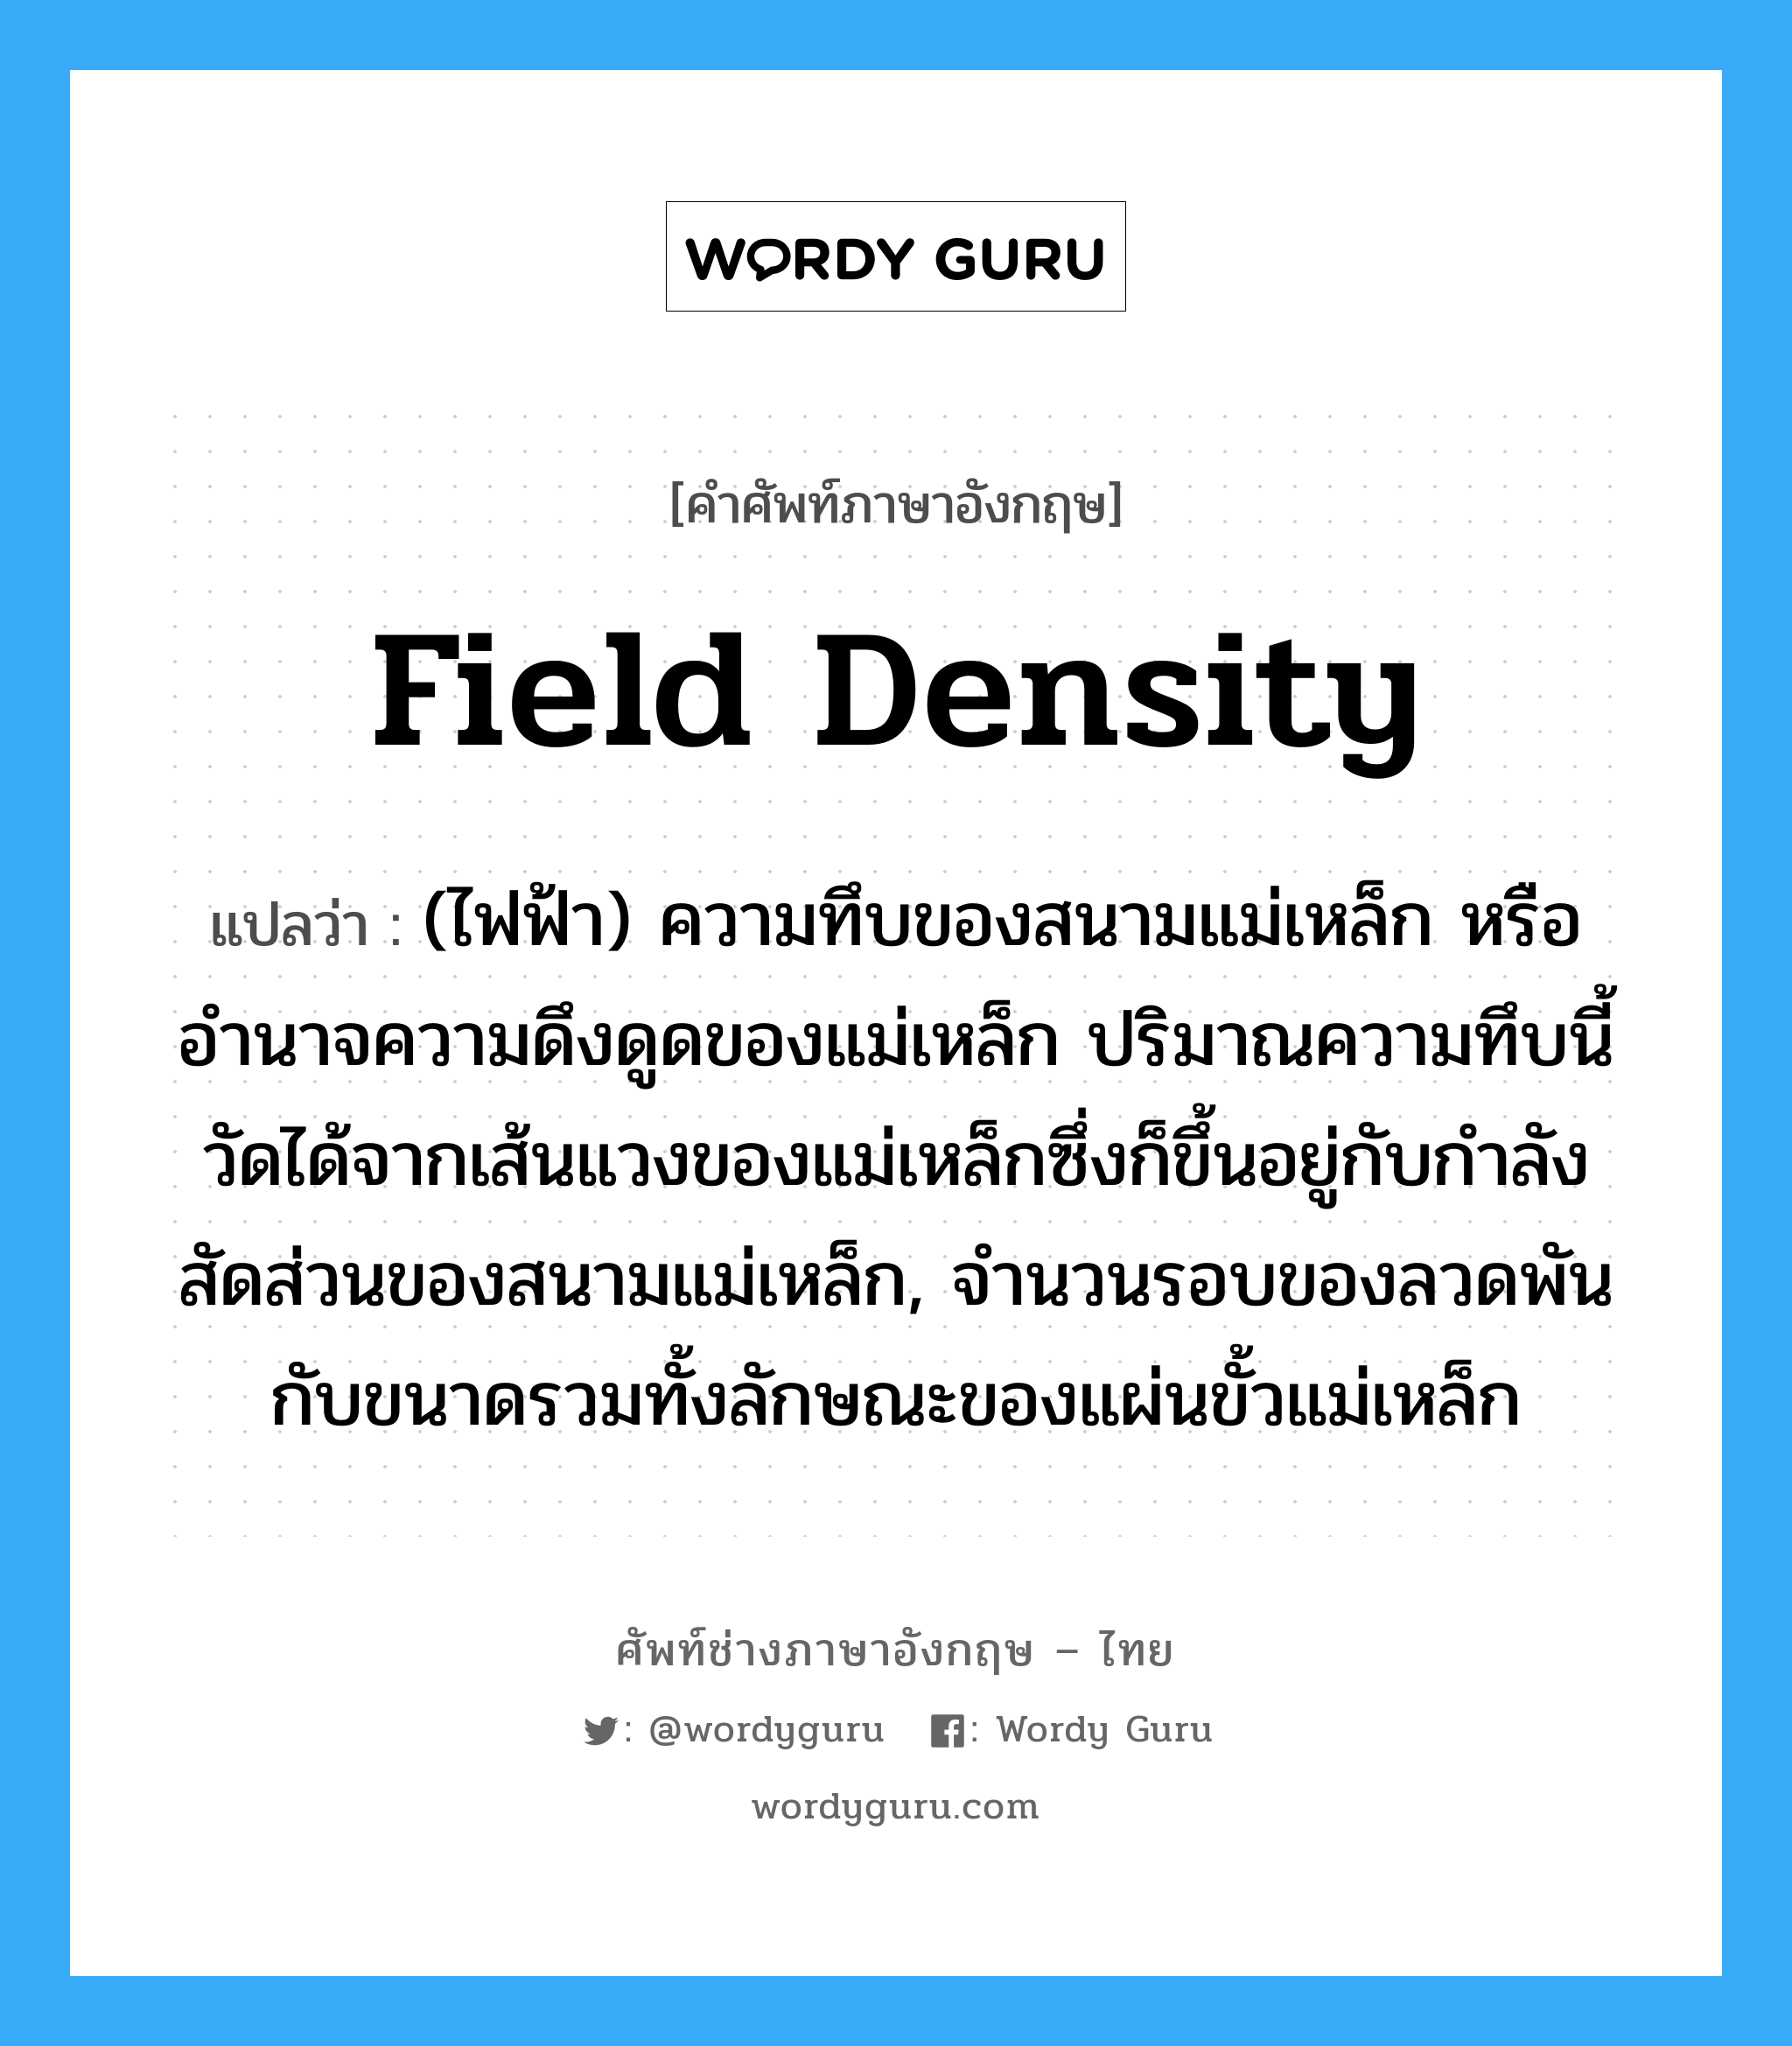 field density แปลว่า?, คำศัพท์ช่างภาษาอังกฤษ - ไทย field density คำศัพท์ภาษาอังกฤษ field density แปลว่า (ไฟฟ้า) ความทึบของสนามแม่เหล็ก หรืออำนาจความดึงดูดของแม่เหล็ก ปริมาณความทึบนี้วัดได้จากเส้นแวงของแม่เหล็กซึ่งก็ขึ้นอยู่กับกำลังสัดส่วนของสนามแม่เหล็ก, จำนวนรอบของลวดพัน กับขนาดรวมทั้งลักษณะของแผ่นขั้วแม่เหล็ก